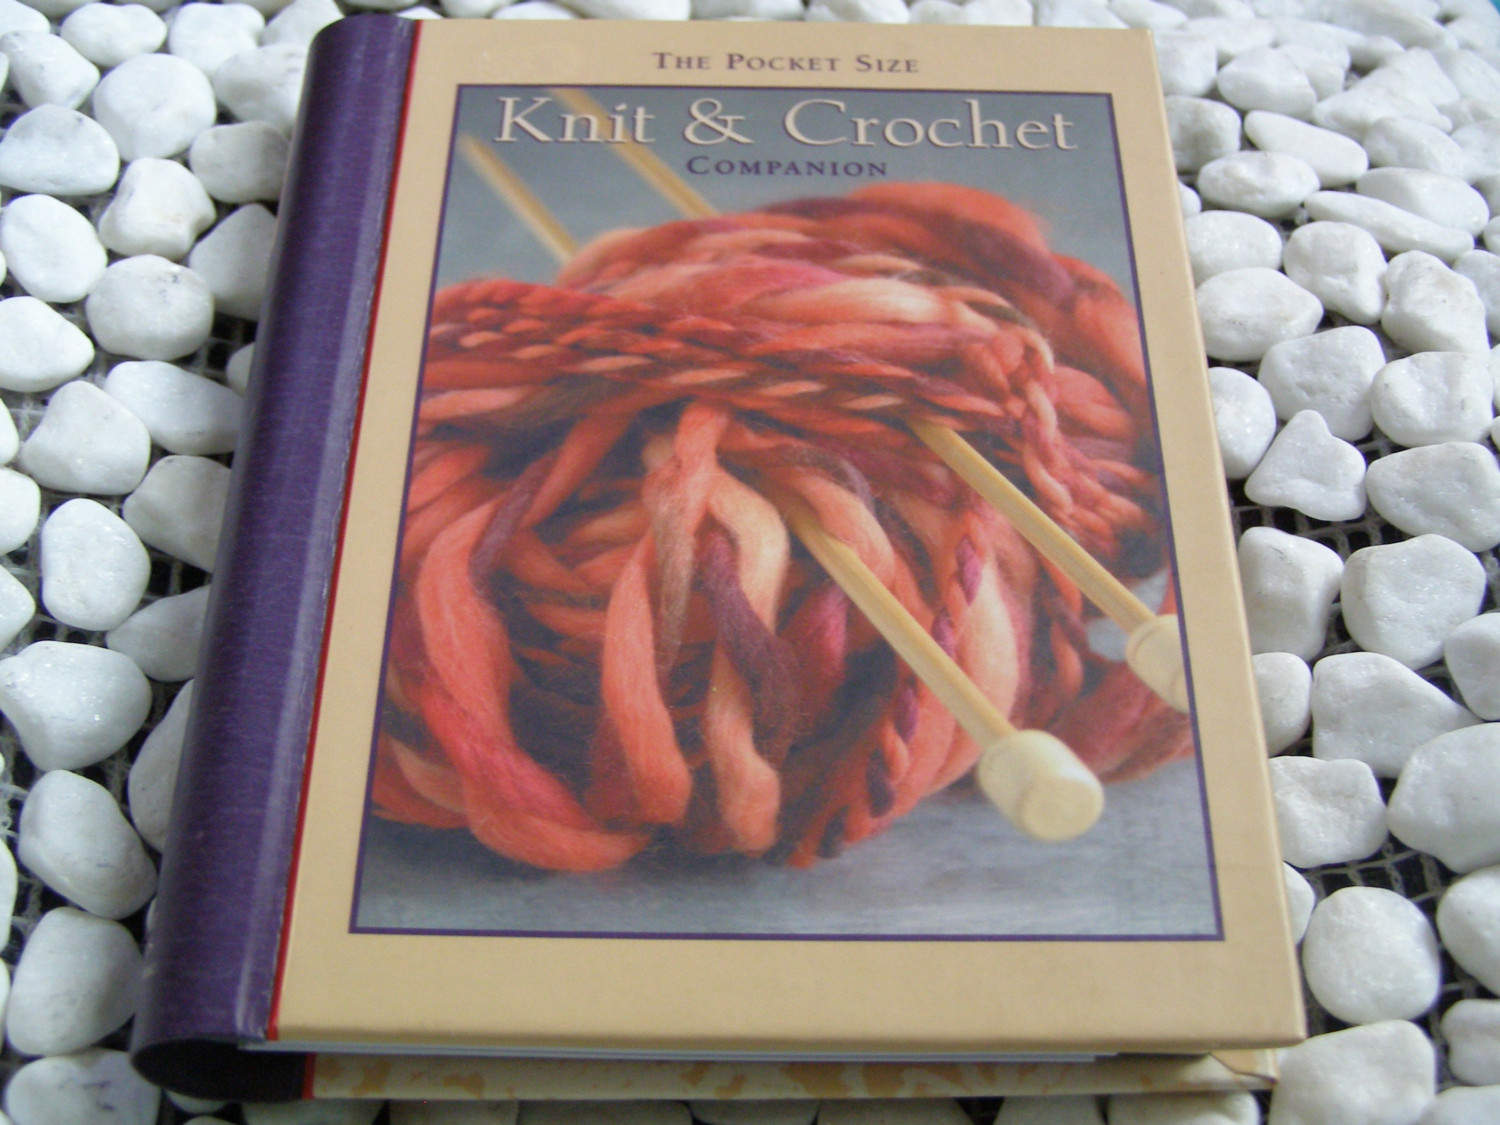 The Pocket Size Knit & Crochet Companion